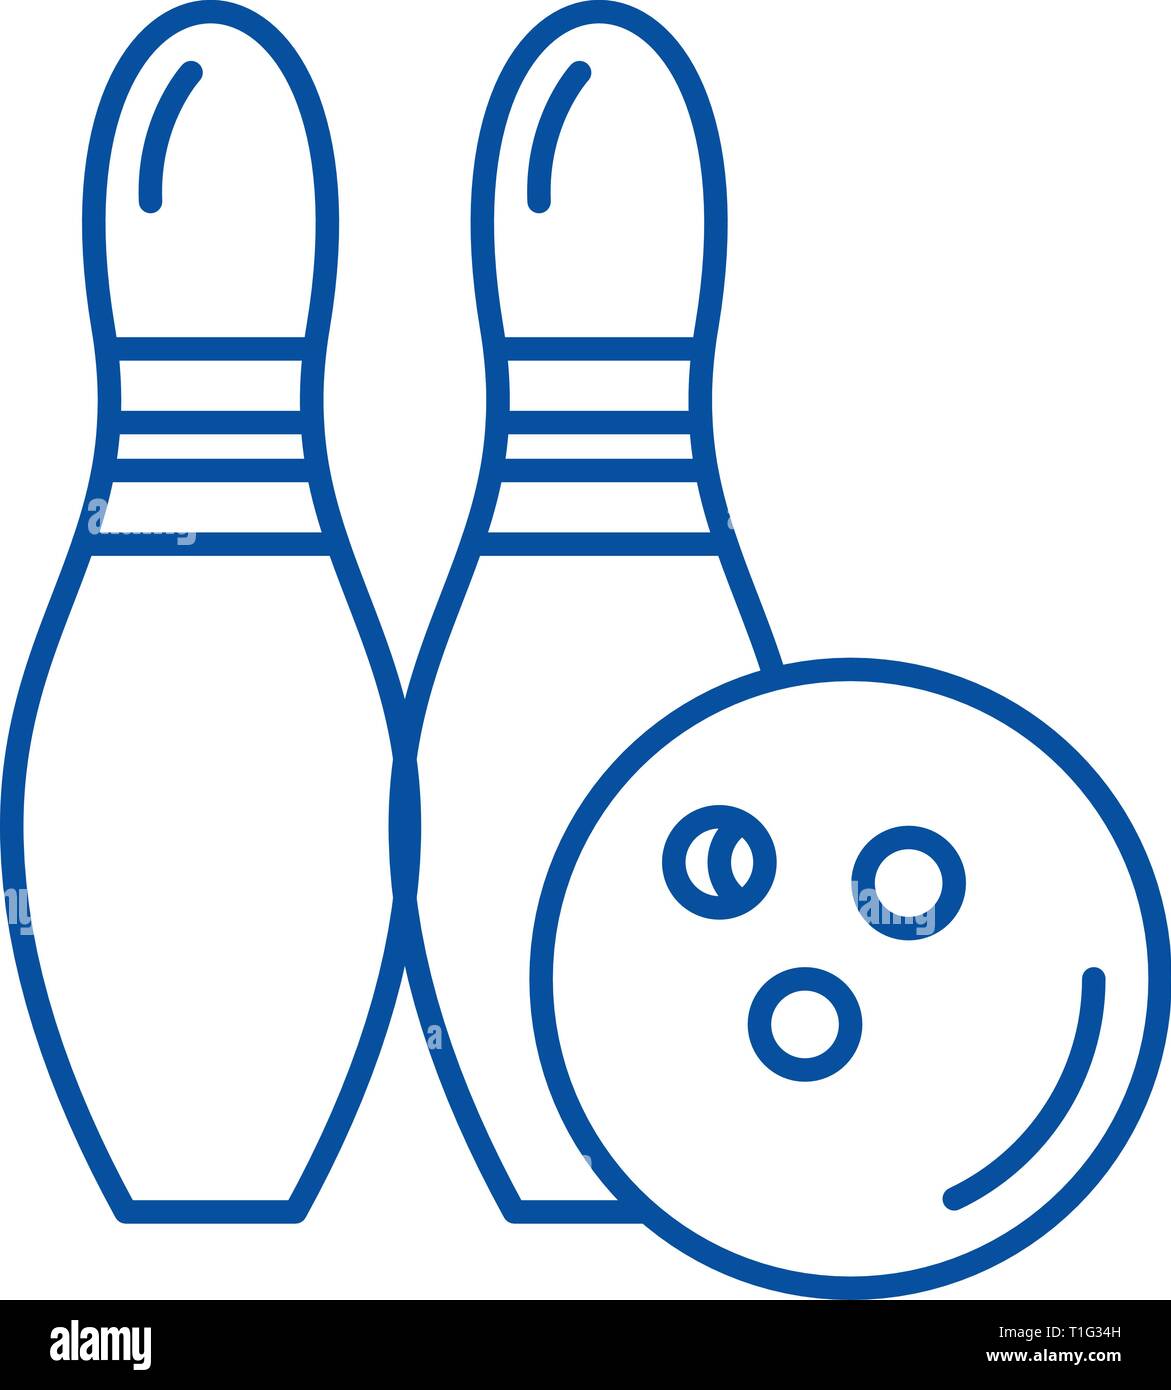 Lanciare la palla da bowling Immagini Vettoriali Stock - Pagina 2 - Alamy